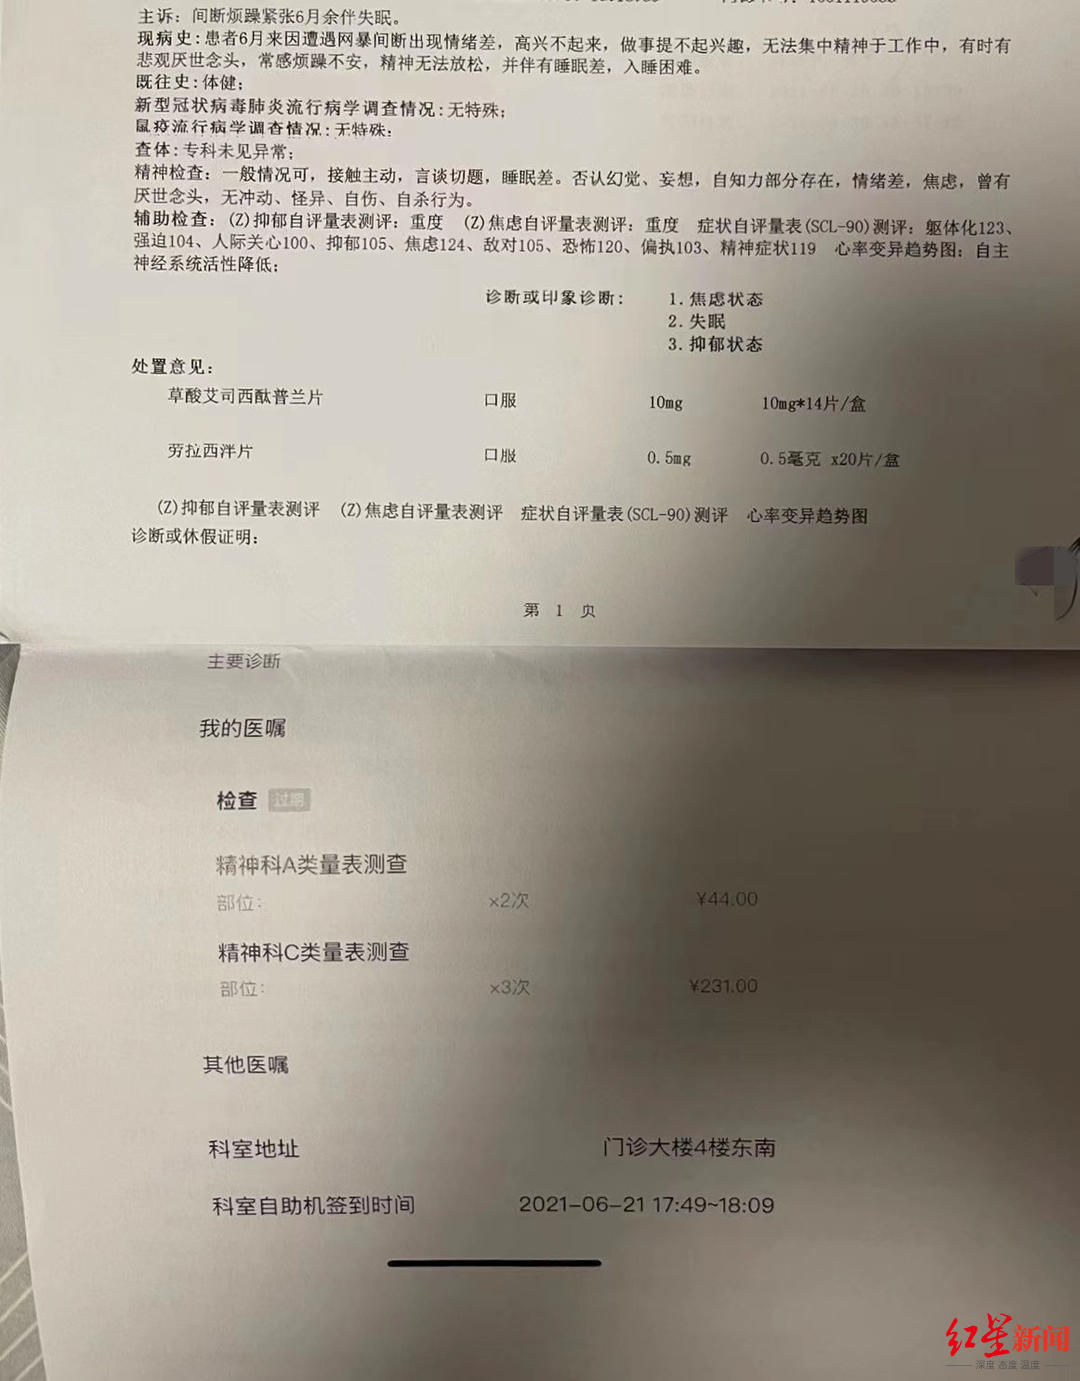 ↑2021年8月，张女士被北京大学国际医院诊断为焦虑状态、失眠、抑郁状态